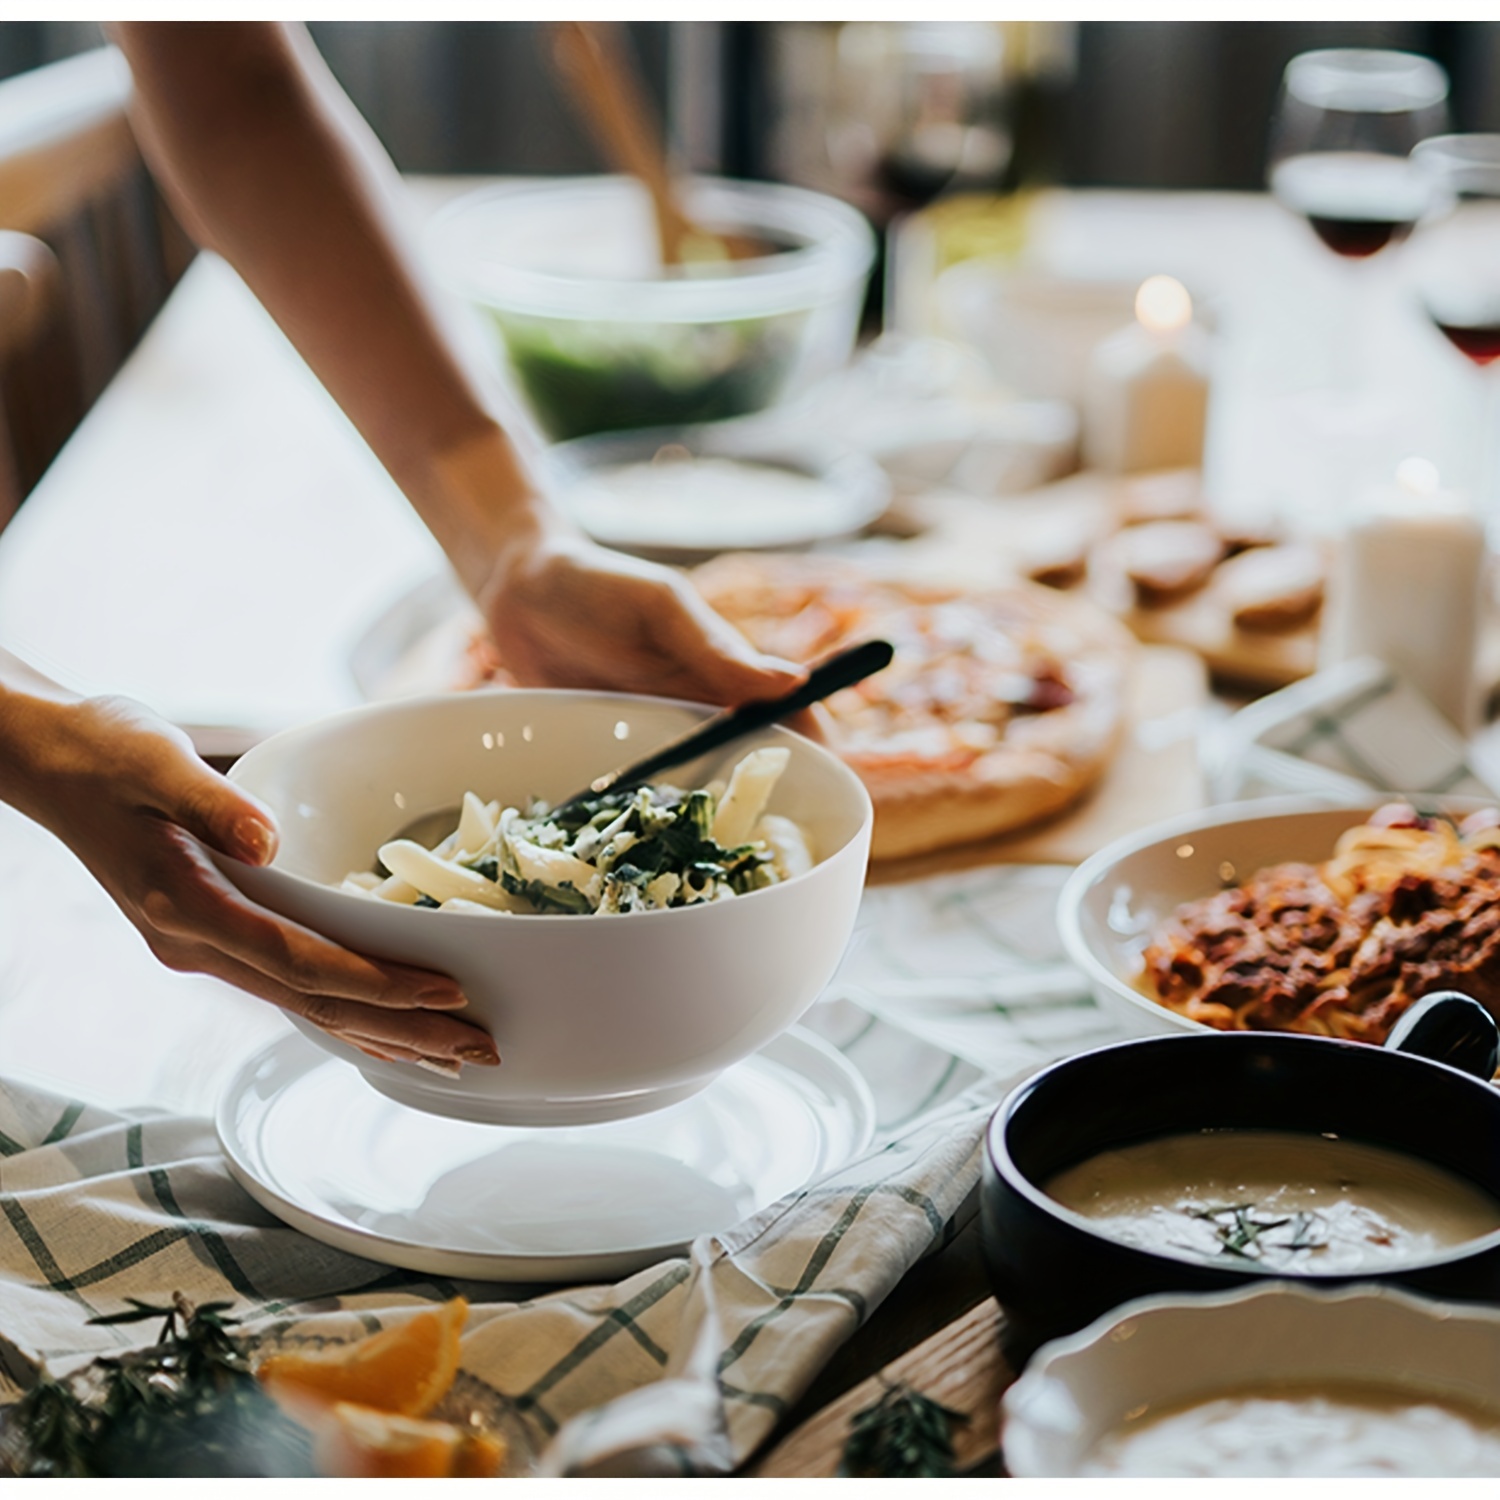 Large Serving Bowls - 60 oz Ceramic Salad Bowl - 8 Inch Serving Bowl Set -  Big Soup Bowl For Kitchen - Microwave & Dishwashers Safe - Pho Fruit Pasta  Popcorn Bowl - Set of 3 - White : : Home